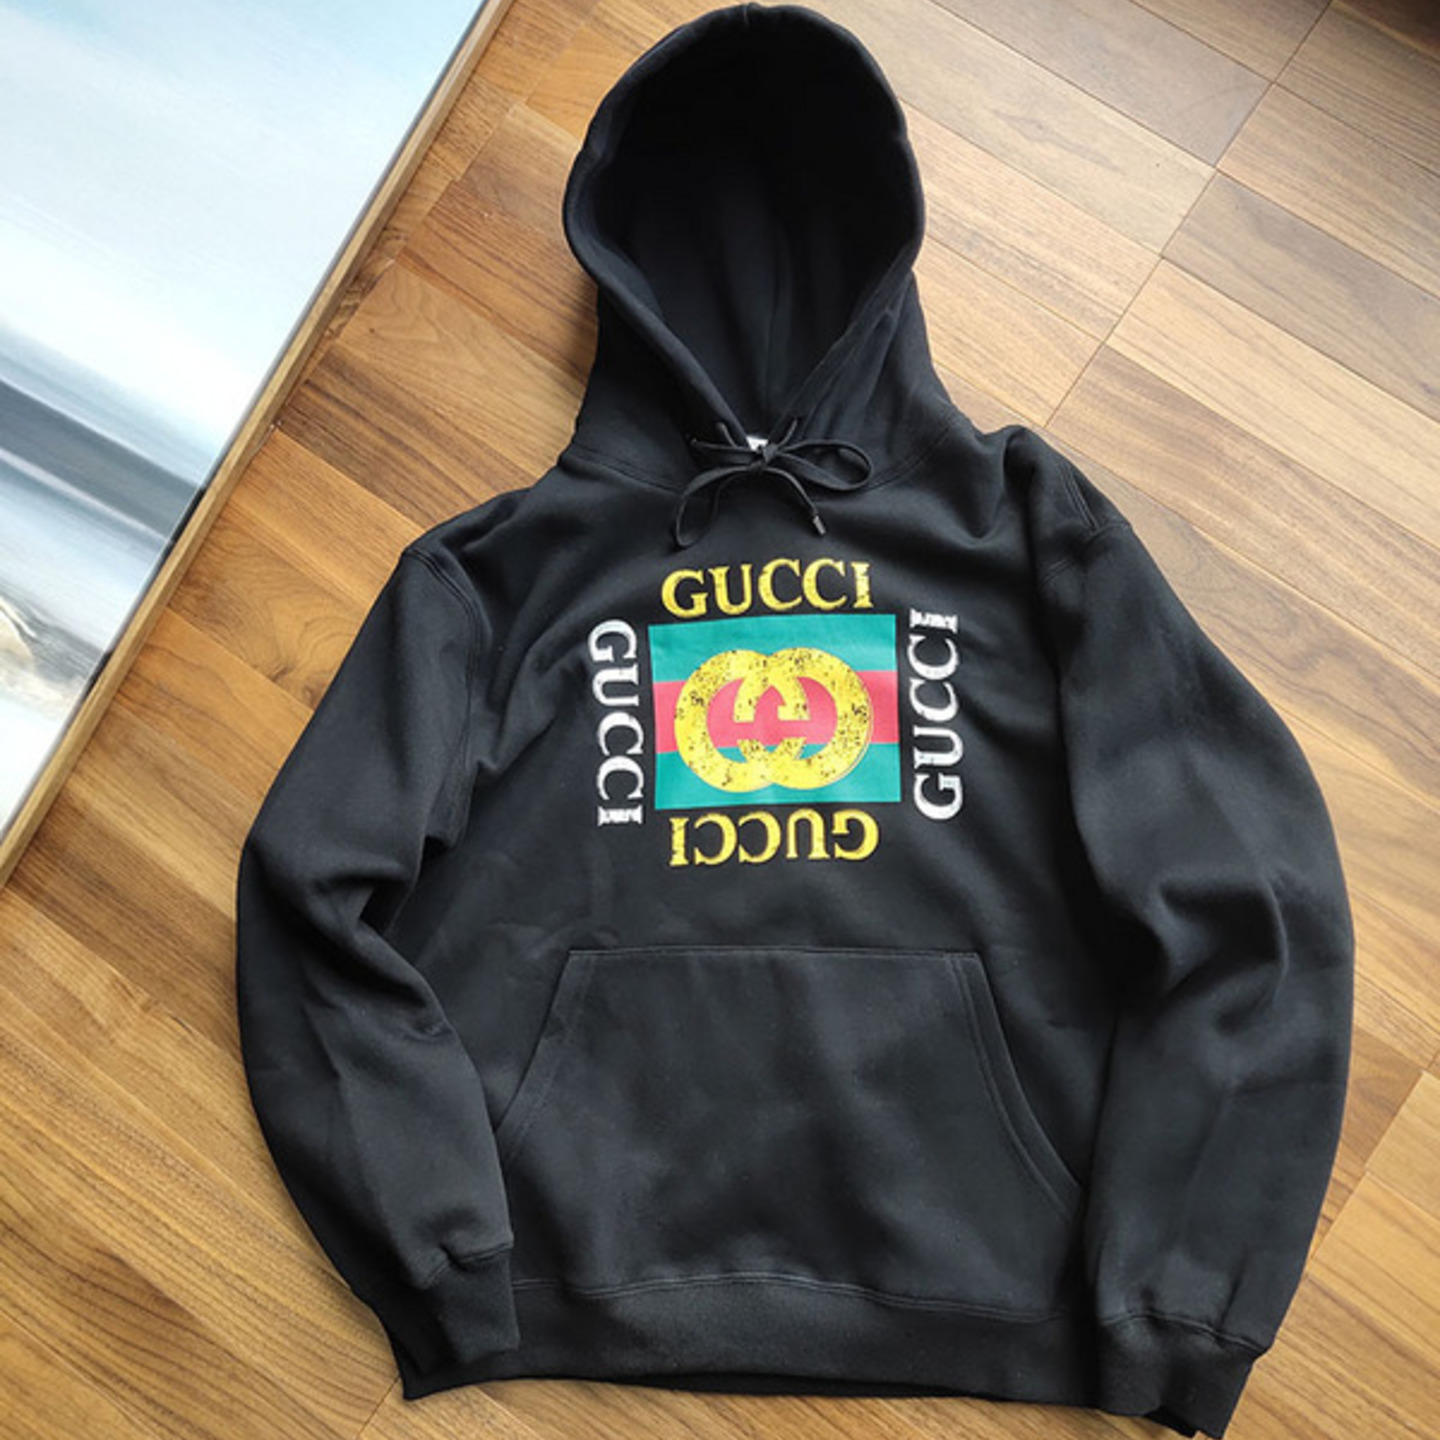 Gucci Logo Printed Hoodie